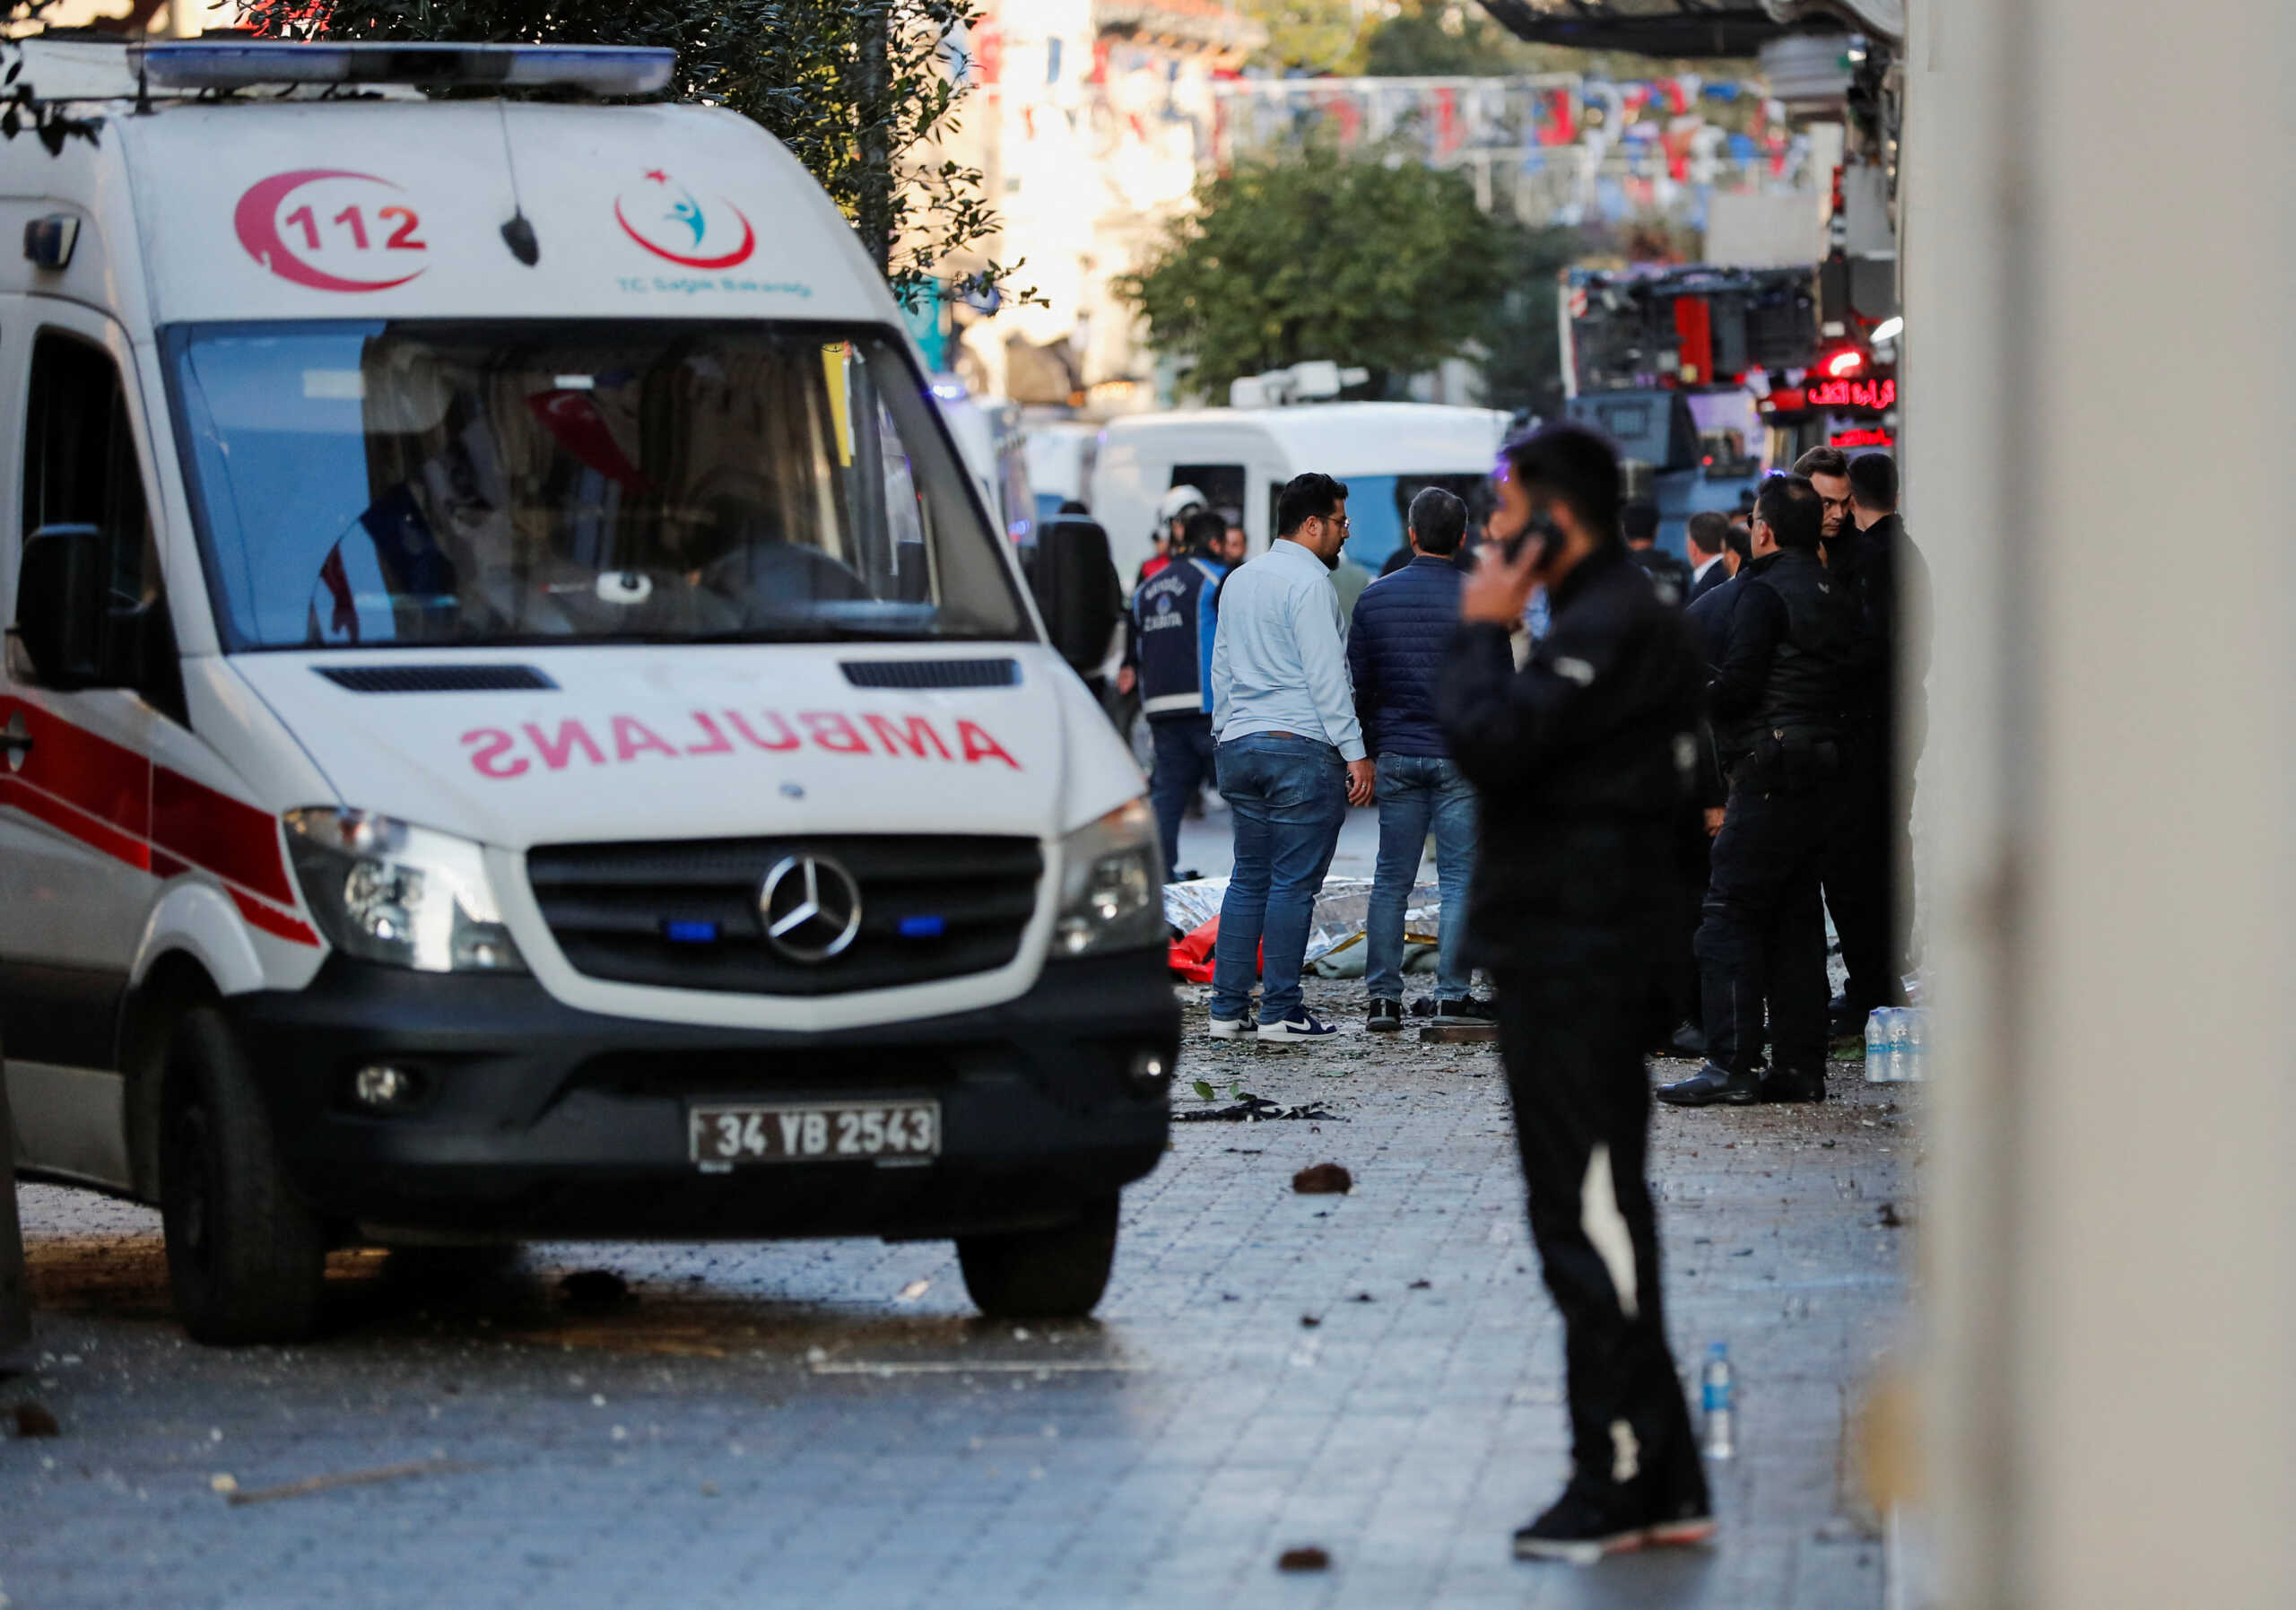 Κωνσταντινούπολη: Ποιες οι μεγαλύτερες τρομοκρατικές επιθέσεις των τελευταίων ετών